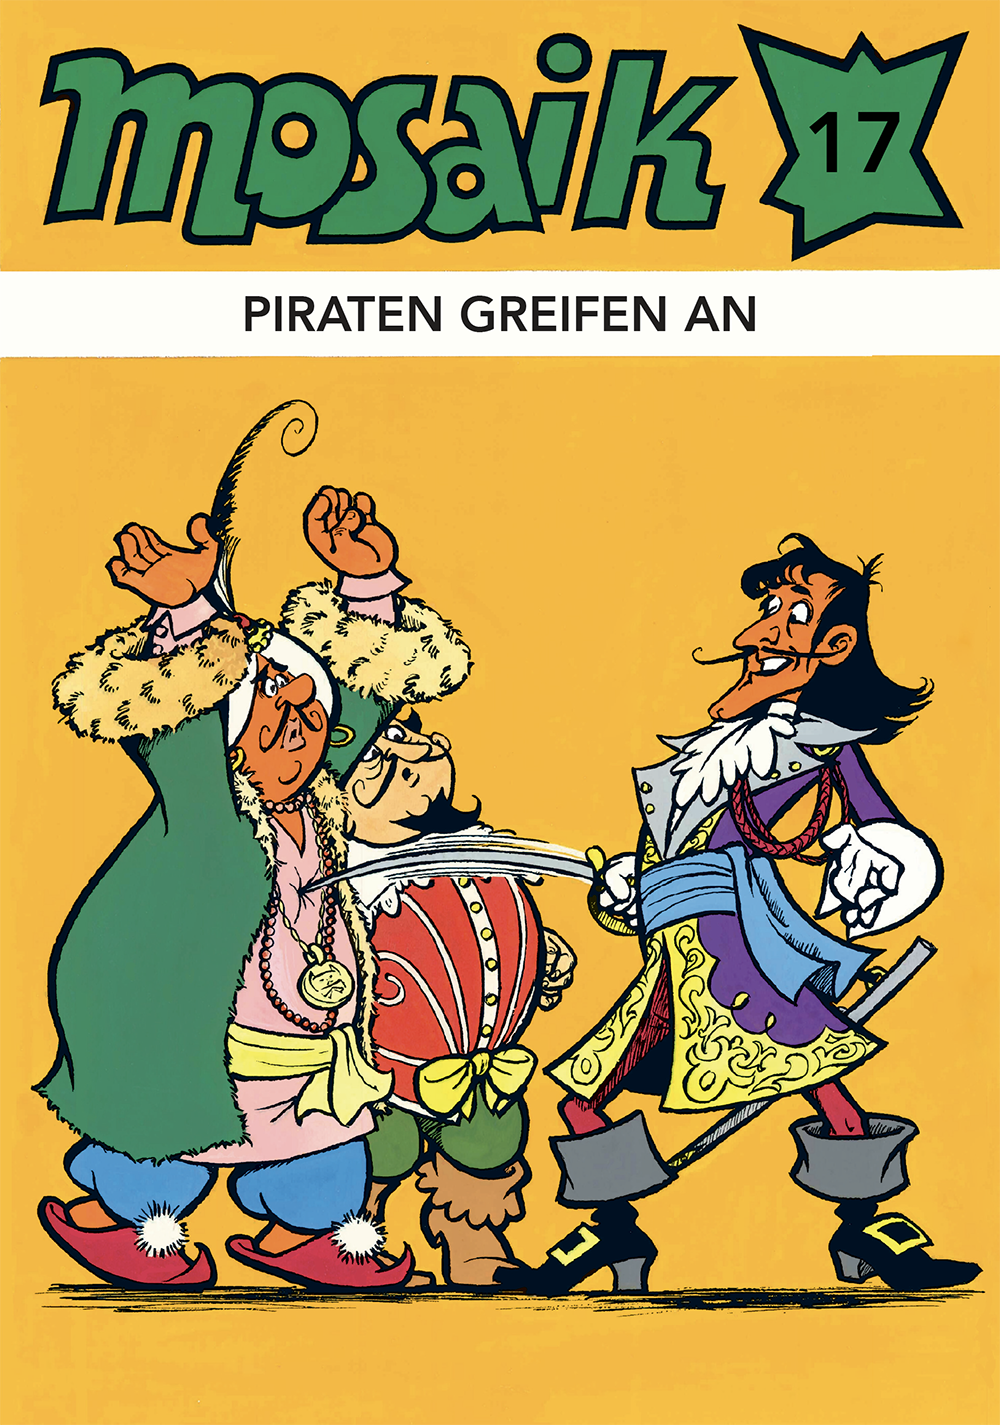 1977 - Komödien und Tragödien - Klassik-Ausgabe